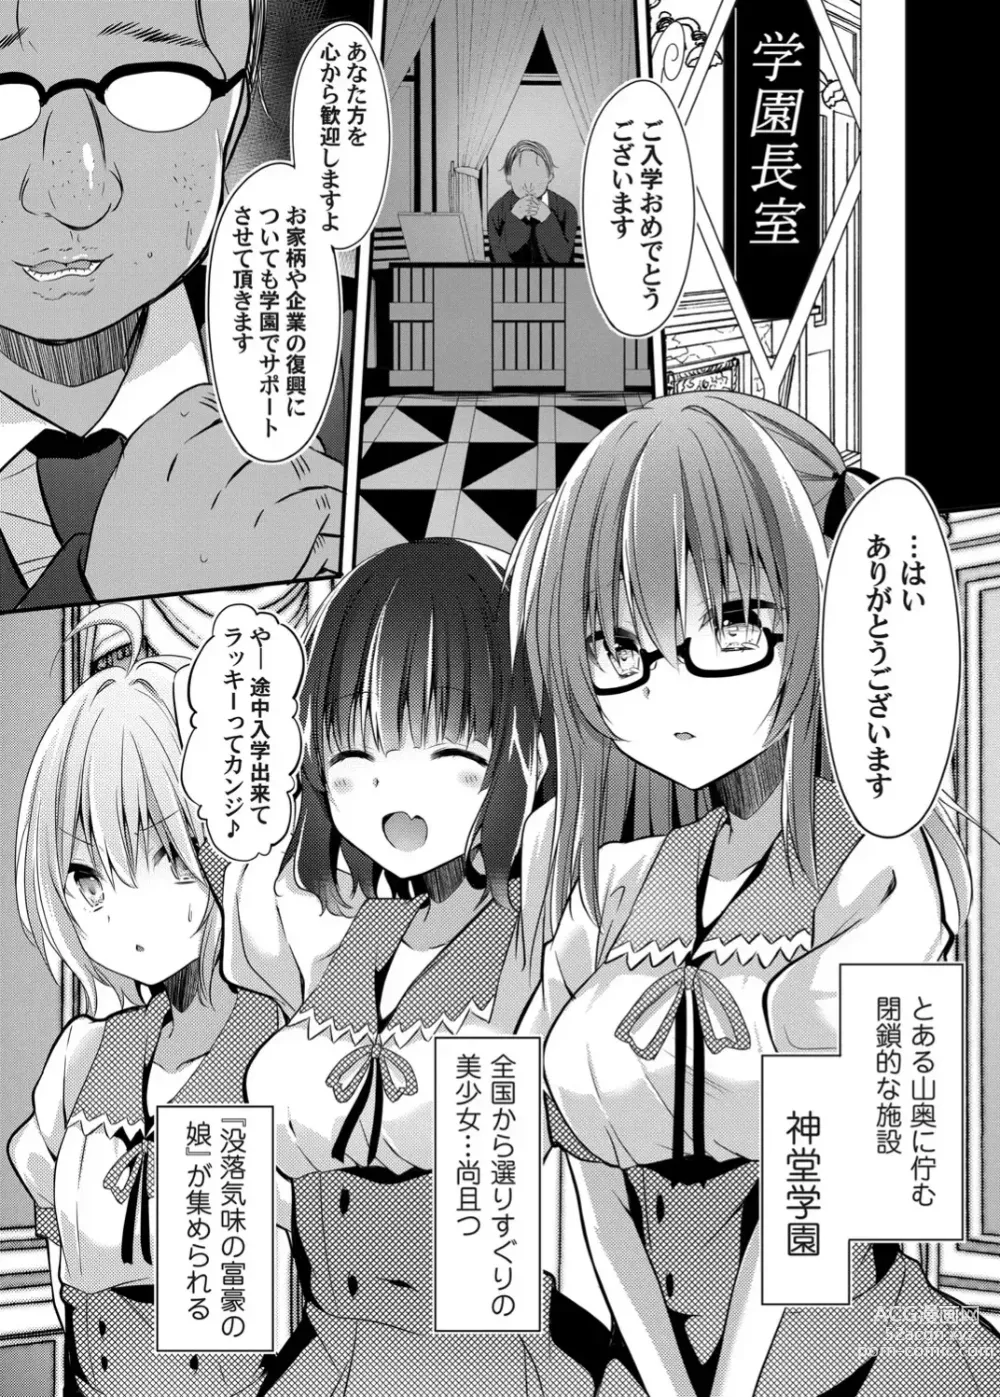 Page 4 of doujinshi Botsuraku Lady no Hakoniwa Showtime